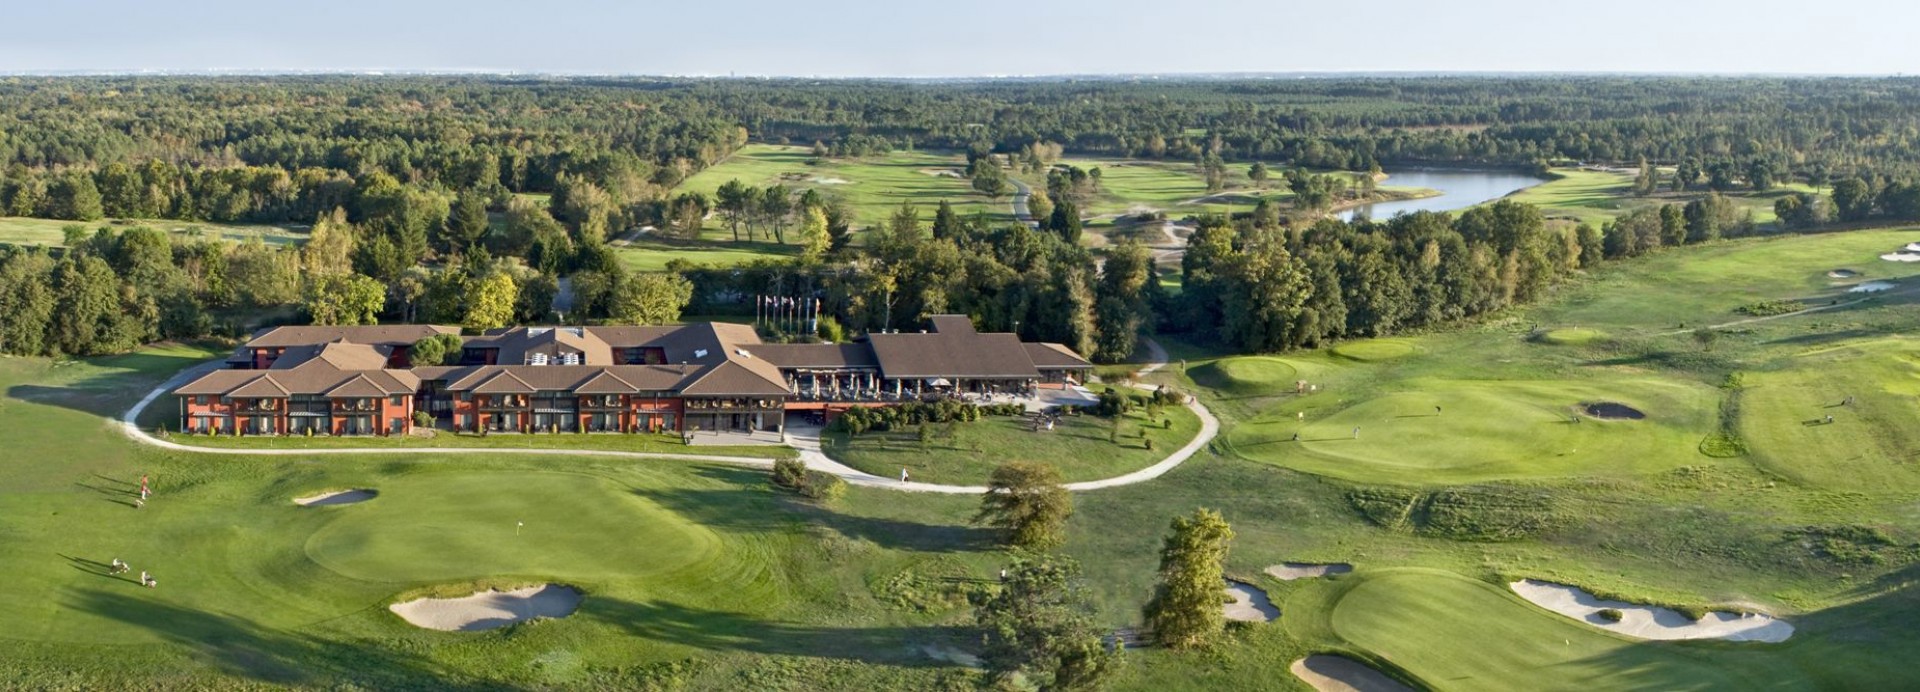 VIGNES COURSE – Golf du Médoc Resort  | Golfové zájezdy, golfová dovolená, luxusní golf